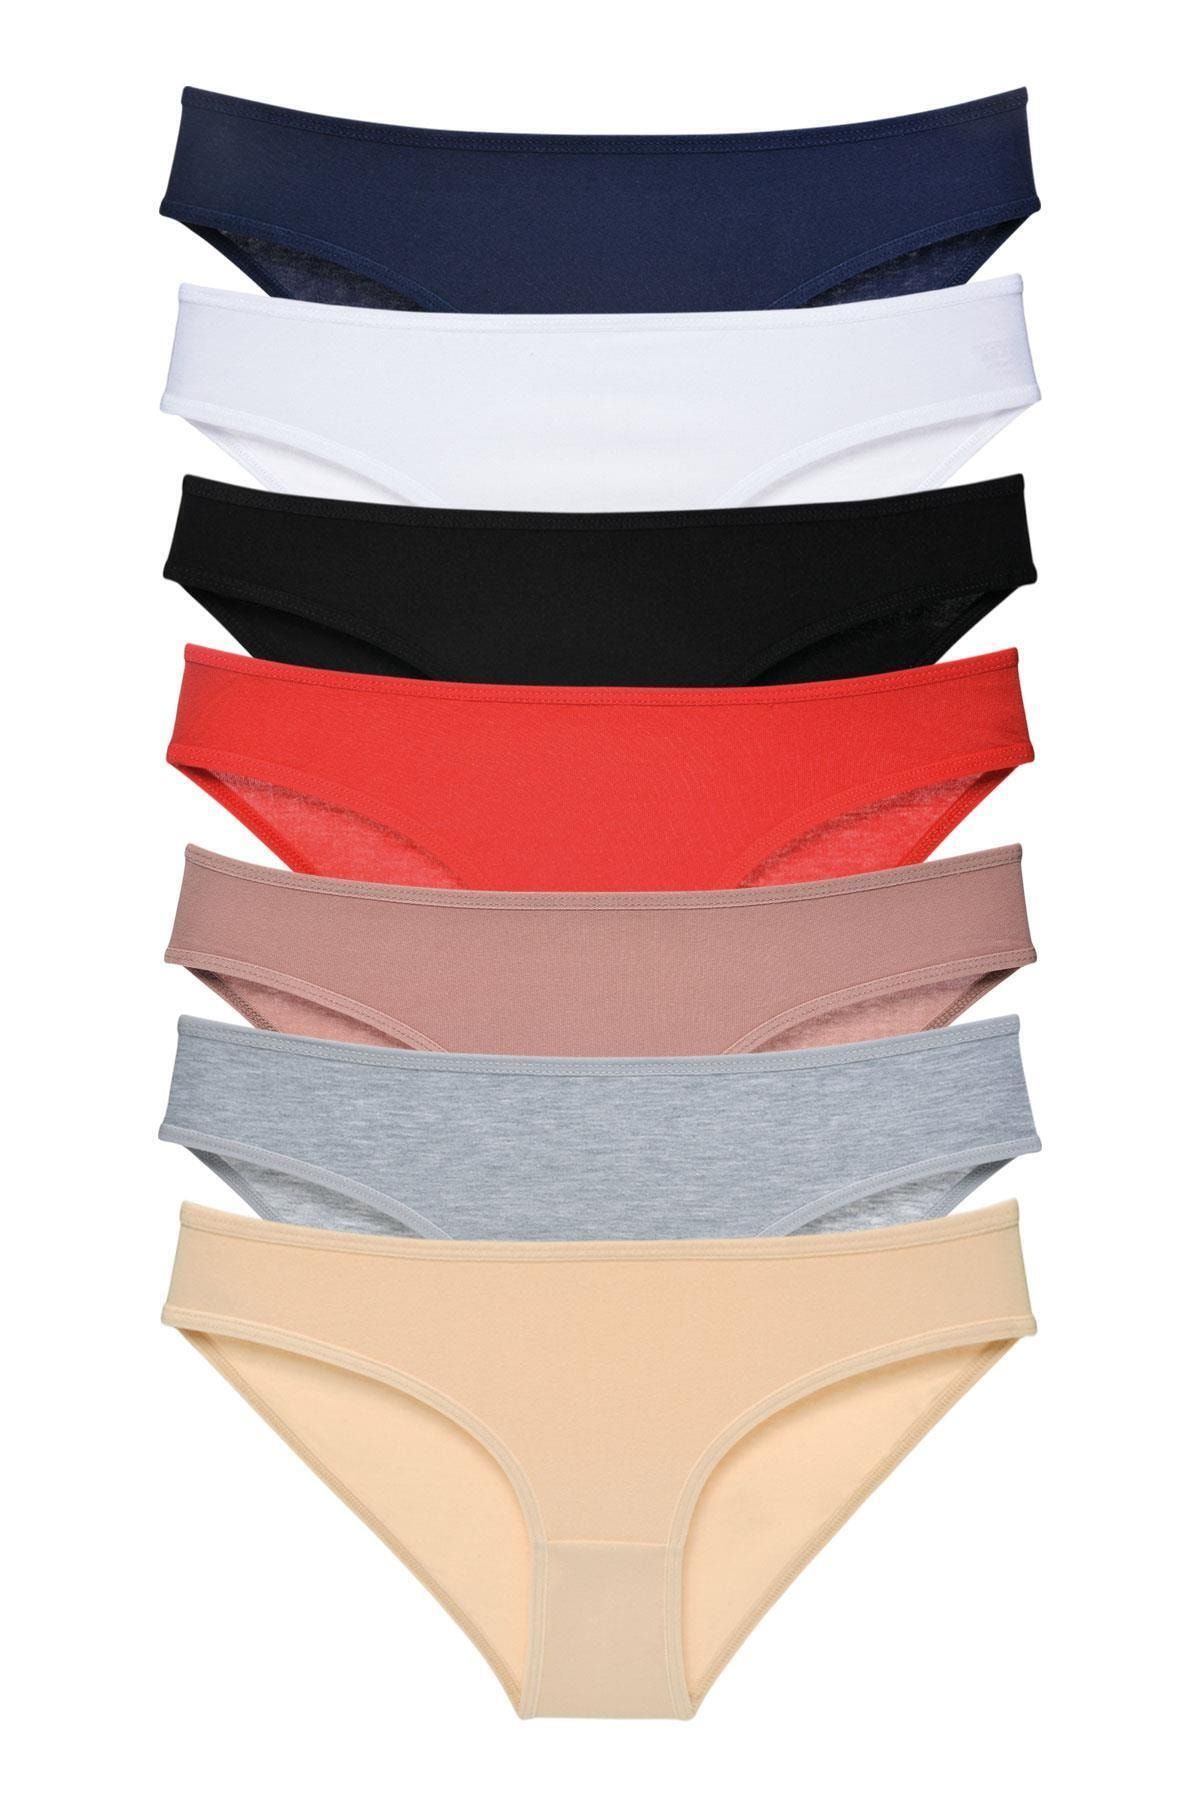 LadyMelex Kadın Koyu Renkler 7'li Paket Klasik Slip Külot